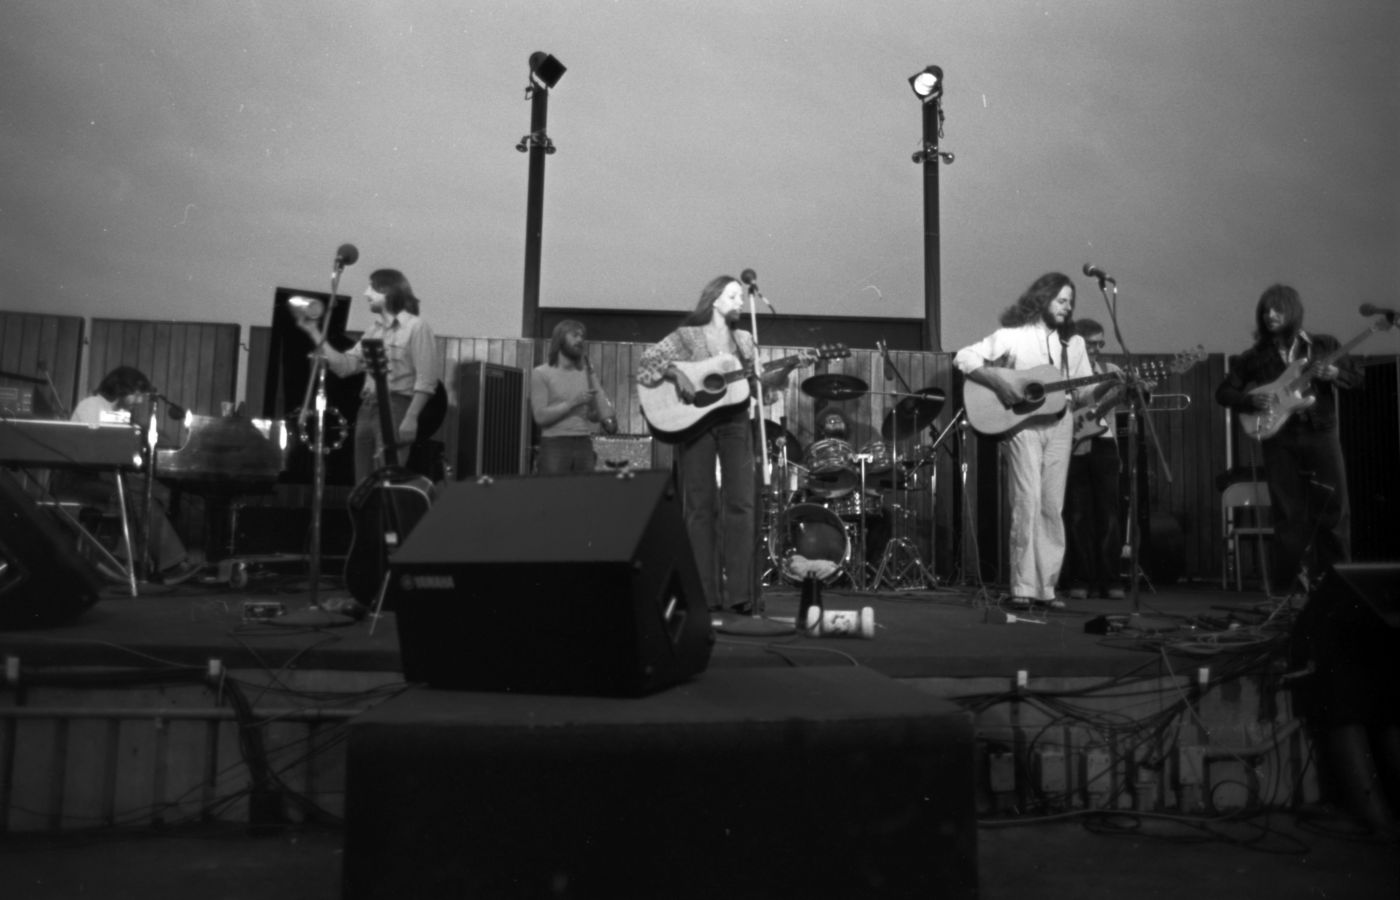 Photographie en noir et blanc d’un groupe de sept musiciens, sur une scène extérieure, sous un faible éclairage. Le groupe inclut trois guitaristes, un bassiste, un pianiste et deux percussionnistes. Six hommes et une femme d’âge moyen, aux cheveux longs et portant des vêtements décontractés.